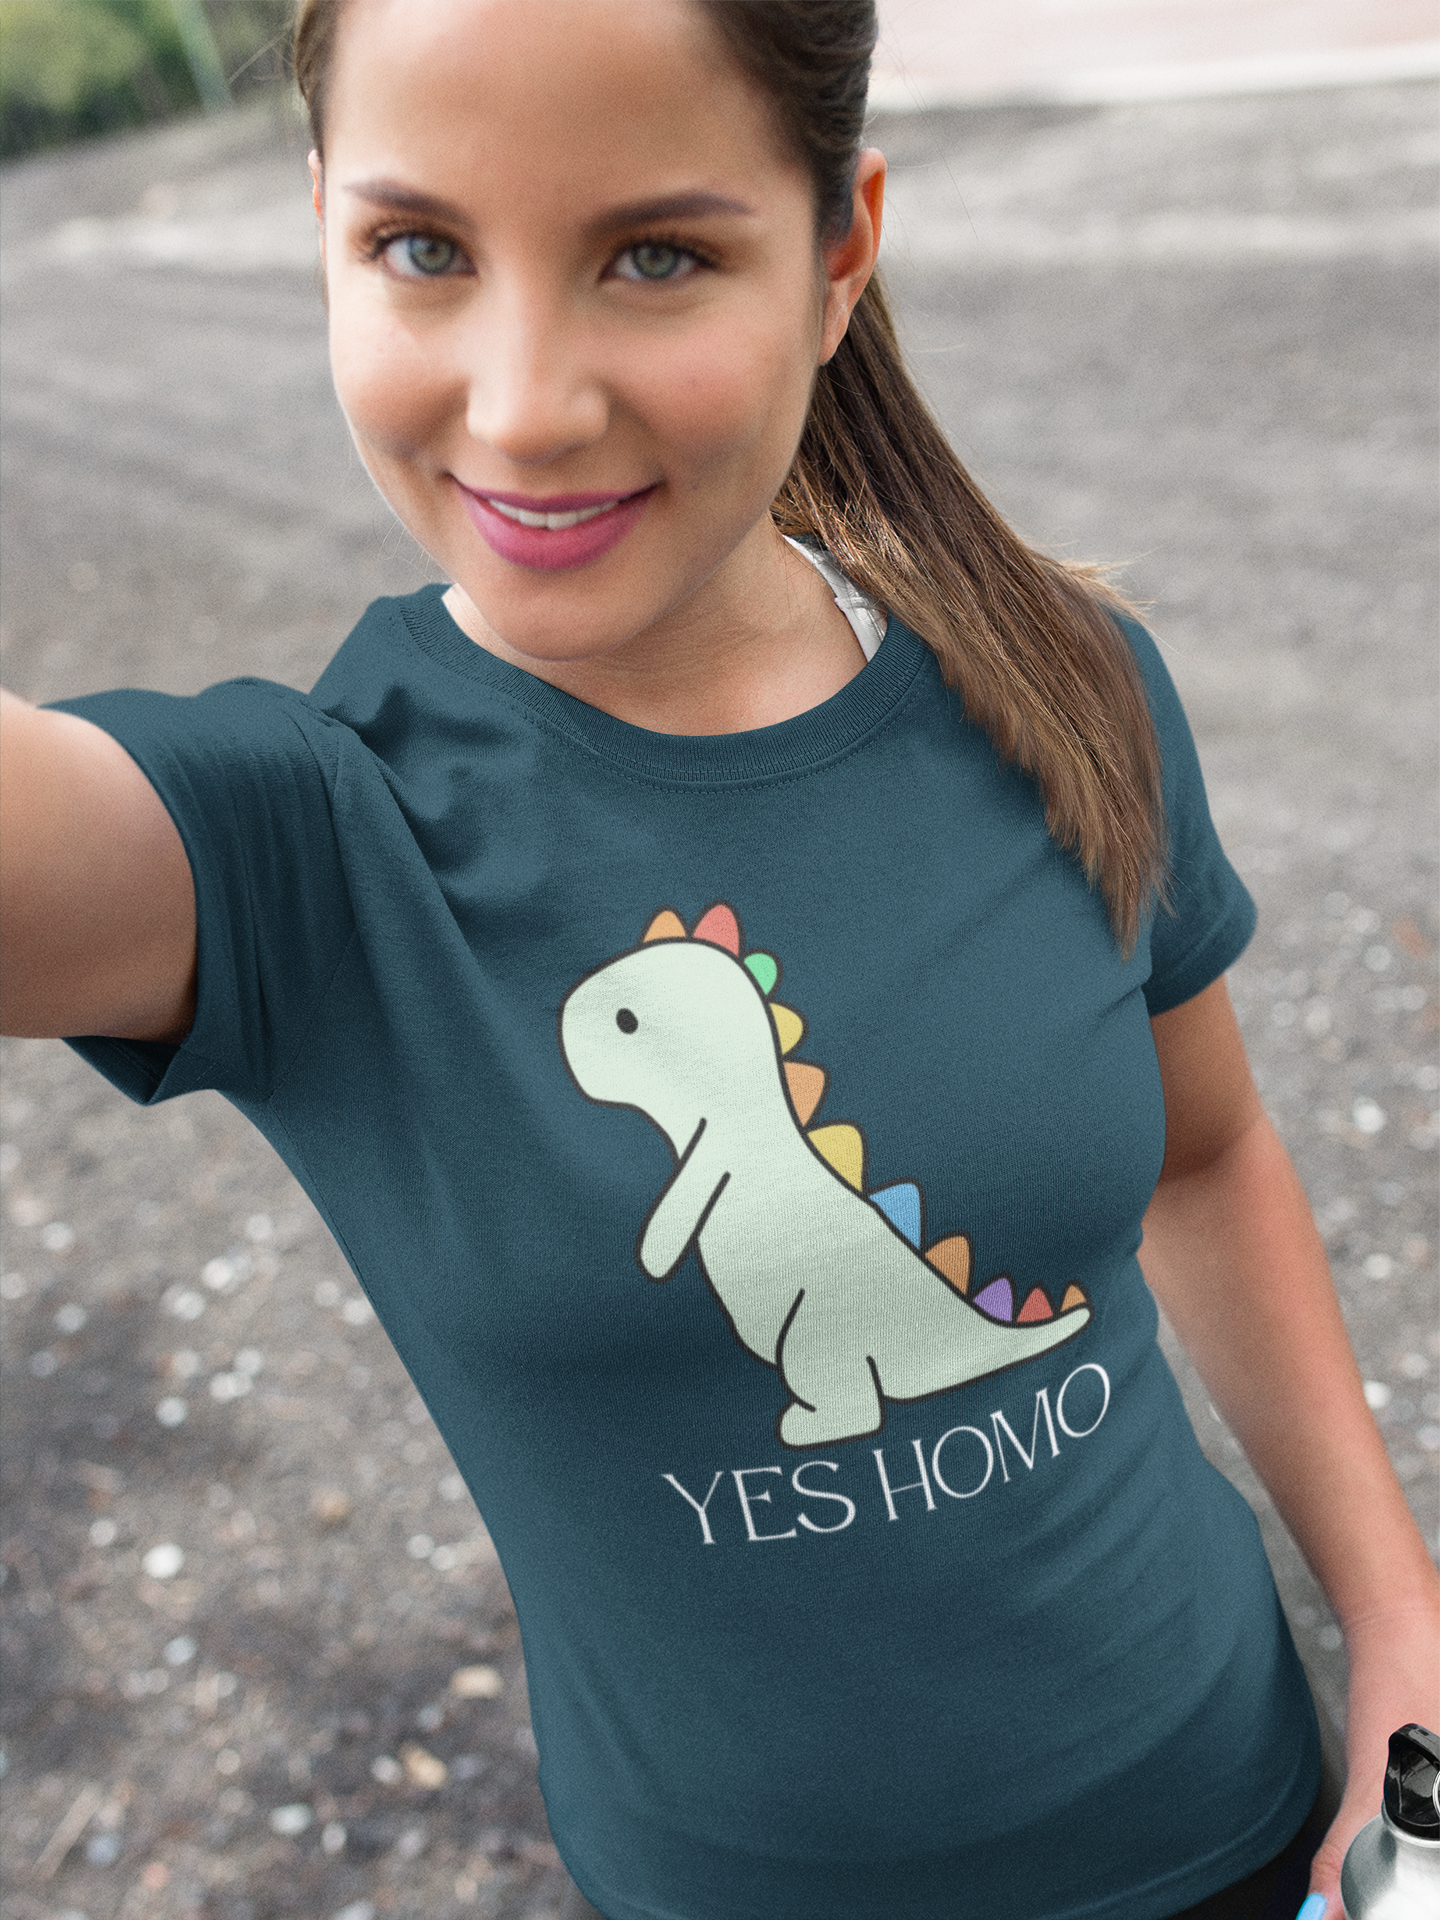 Yes Homo - Unisex T-Shirt